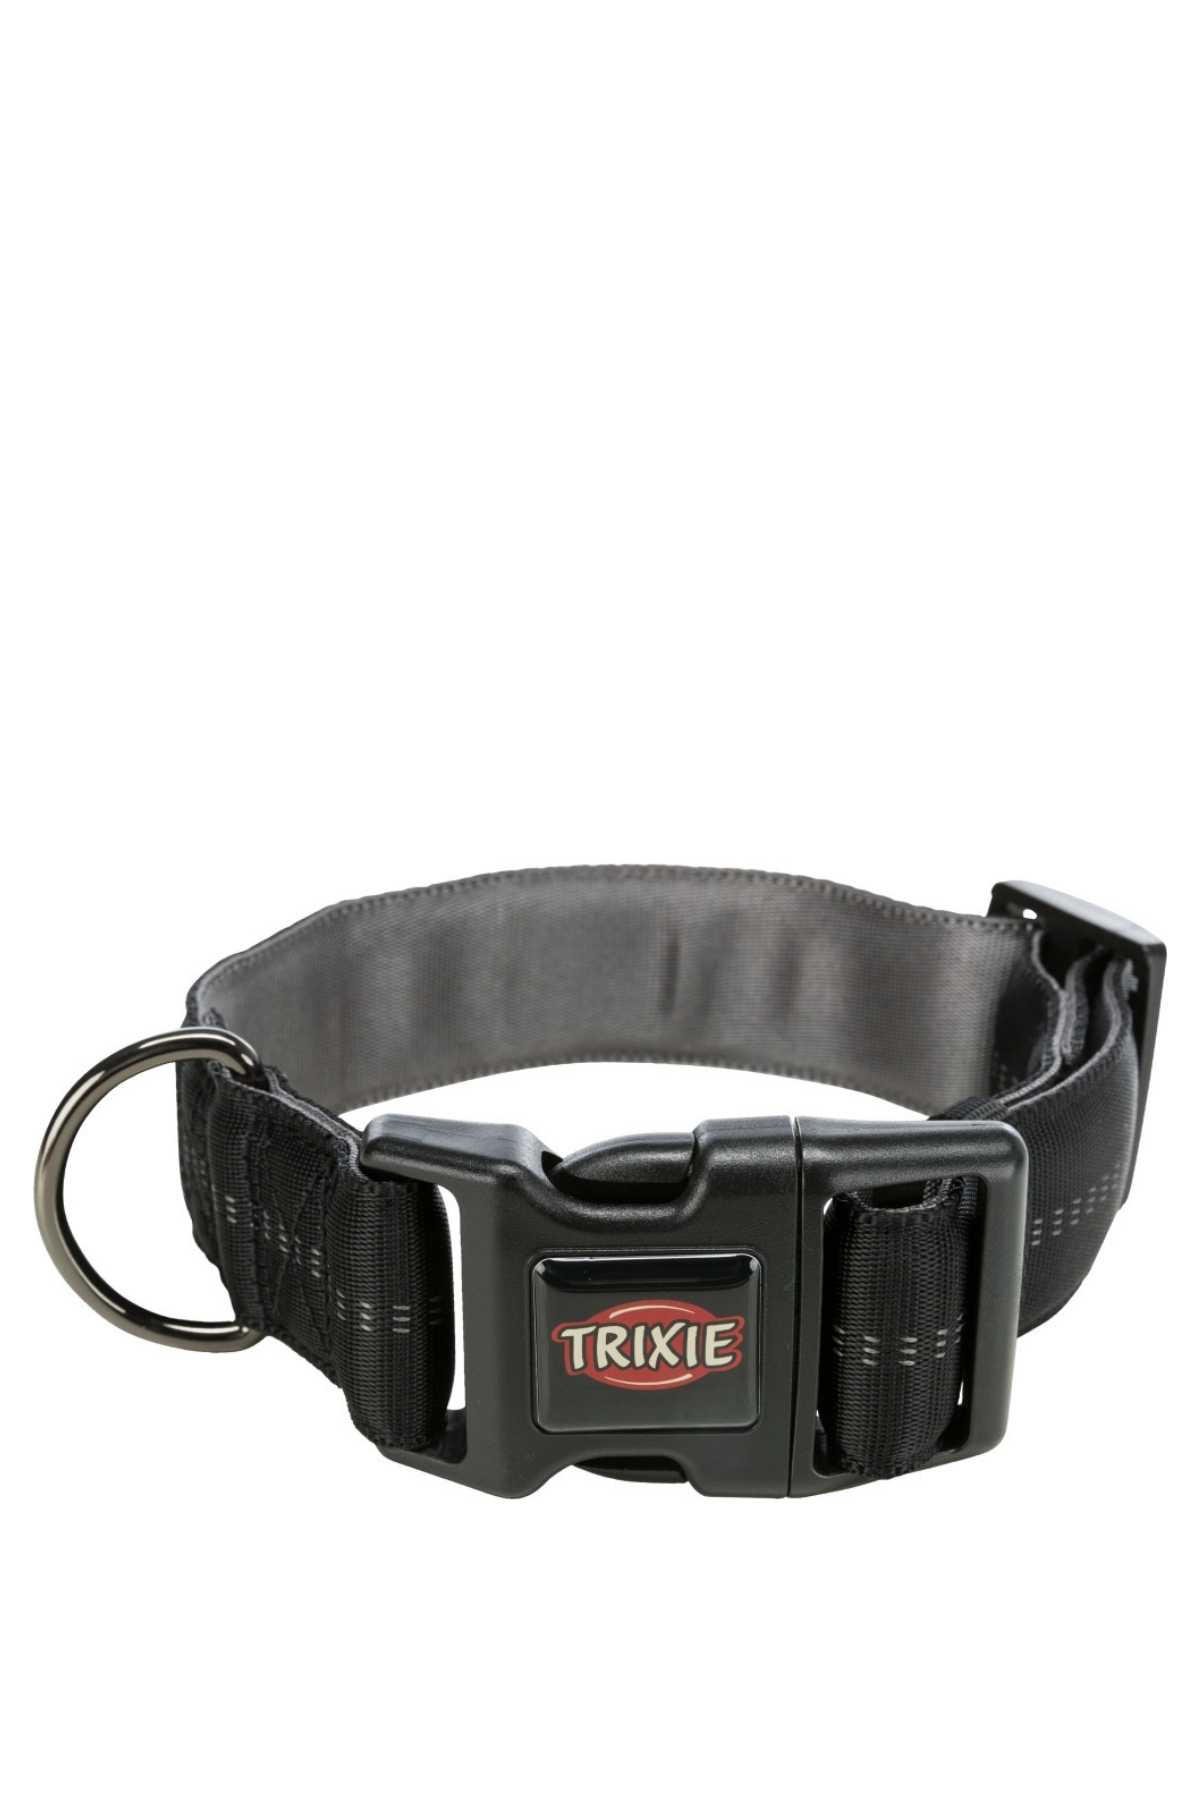 Trixie Ultra Grameniş Şık Yumuşak Yaka 40-55 CM /38 MM 